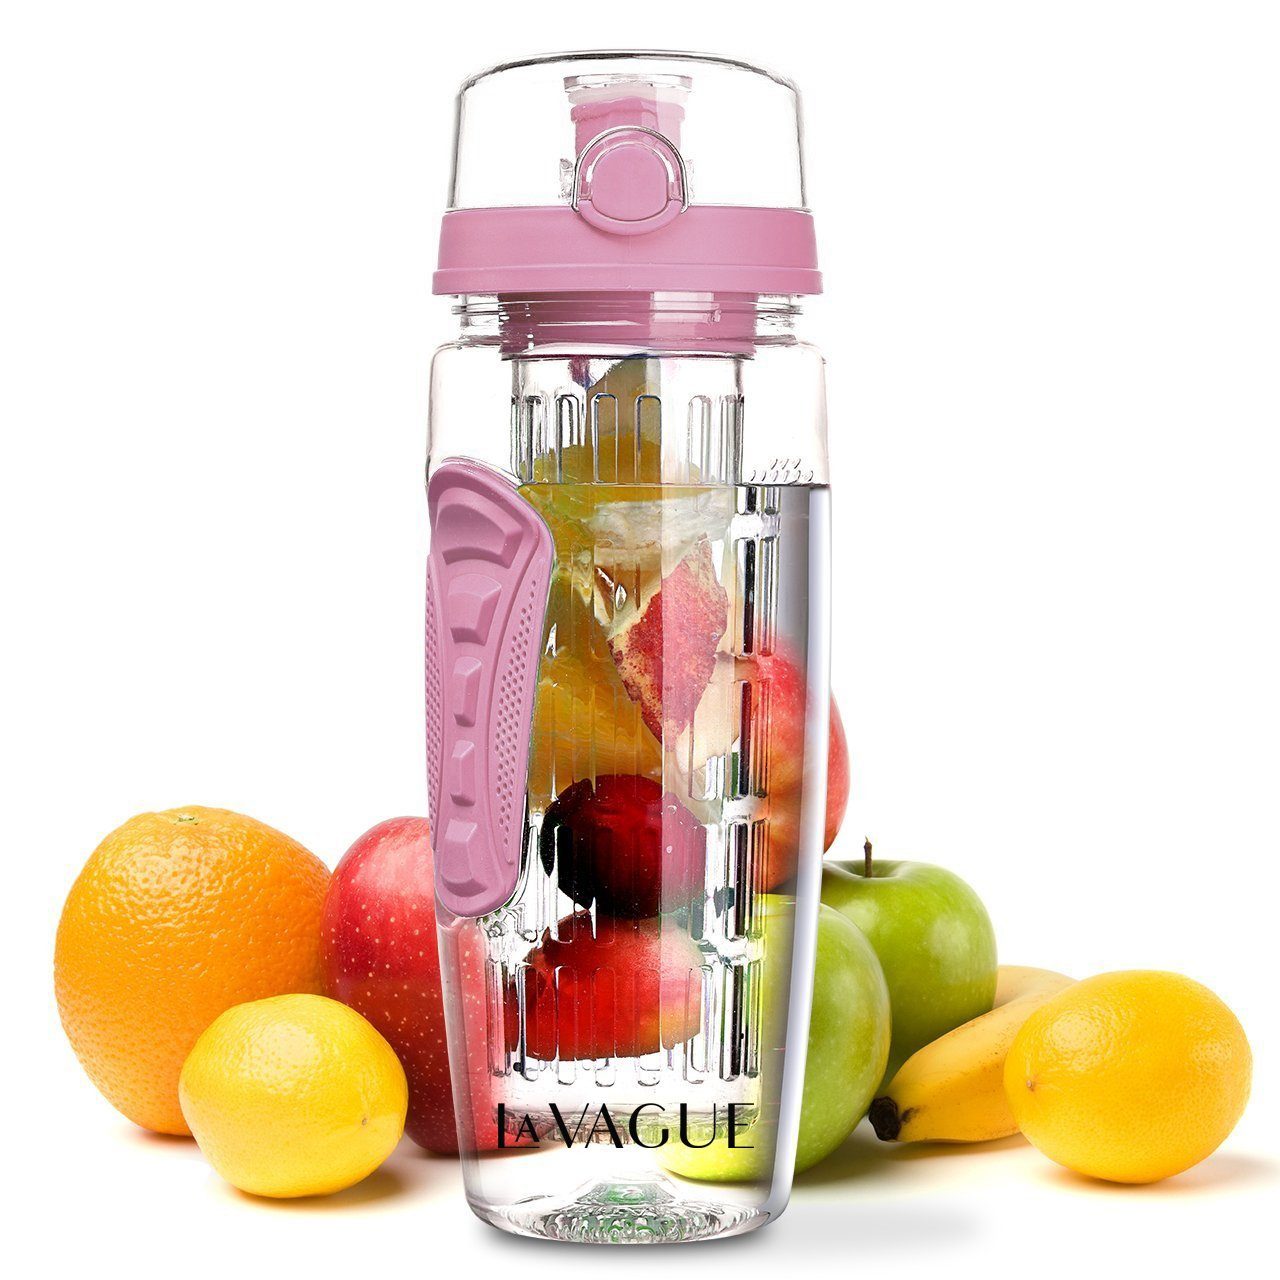 LA VAGUE Trinkflasche VITALITY trinkflasche mit einsatz, Trinkflasche mit Früchtesieb für perfekt aromatisierte Getränke rosa | Kinder-Trinkflaschen